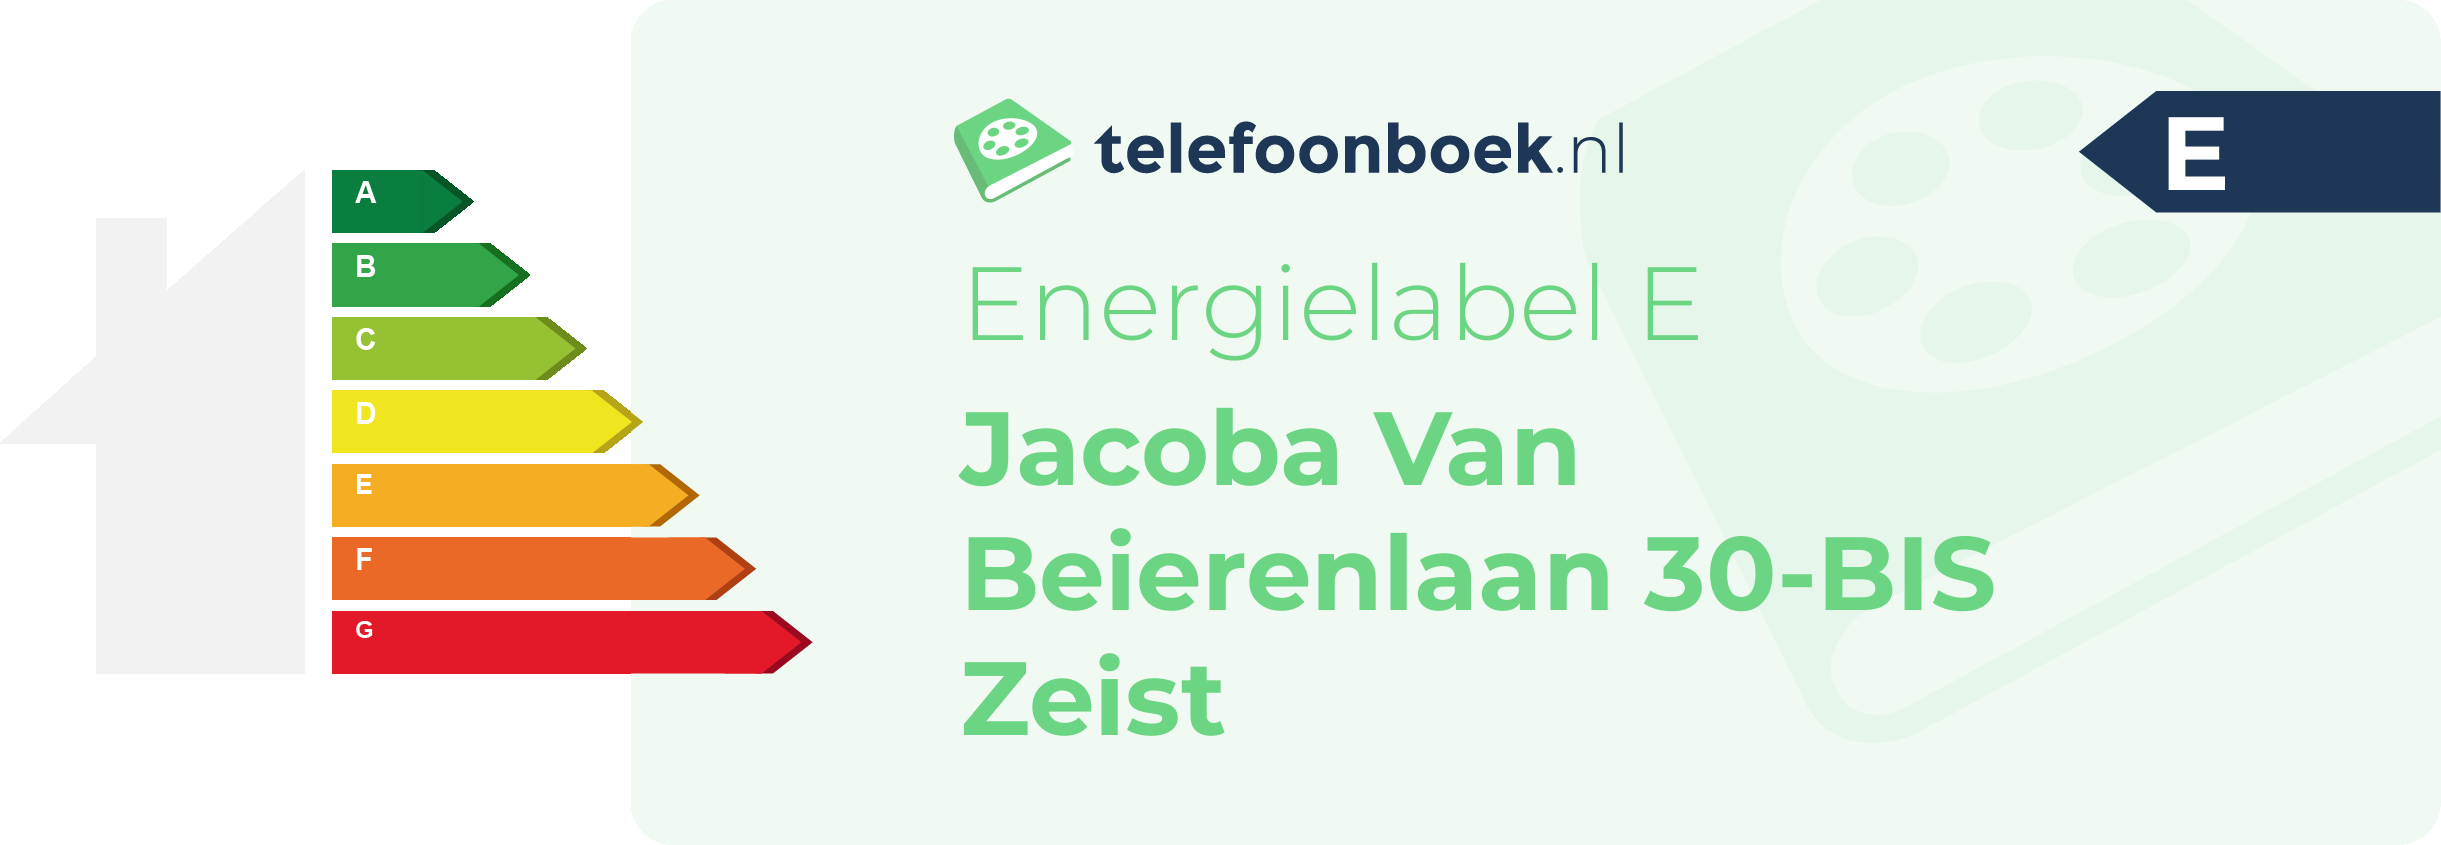 Energielabel Jacoba Van Beierenlaan 30-BIS Zeist